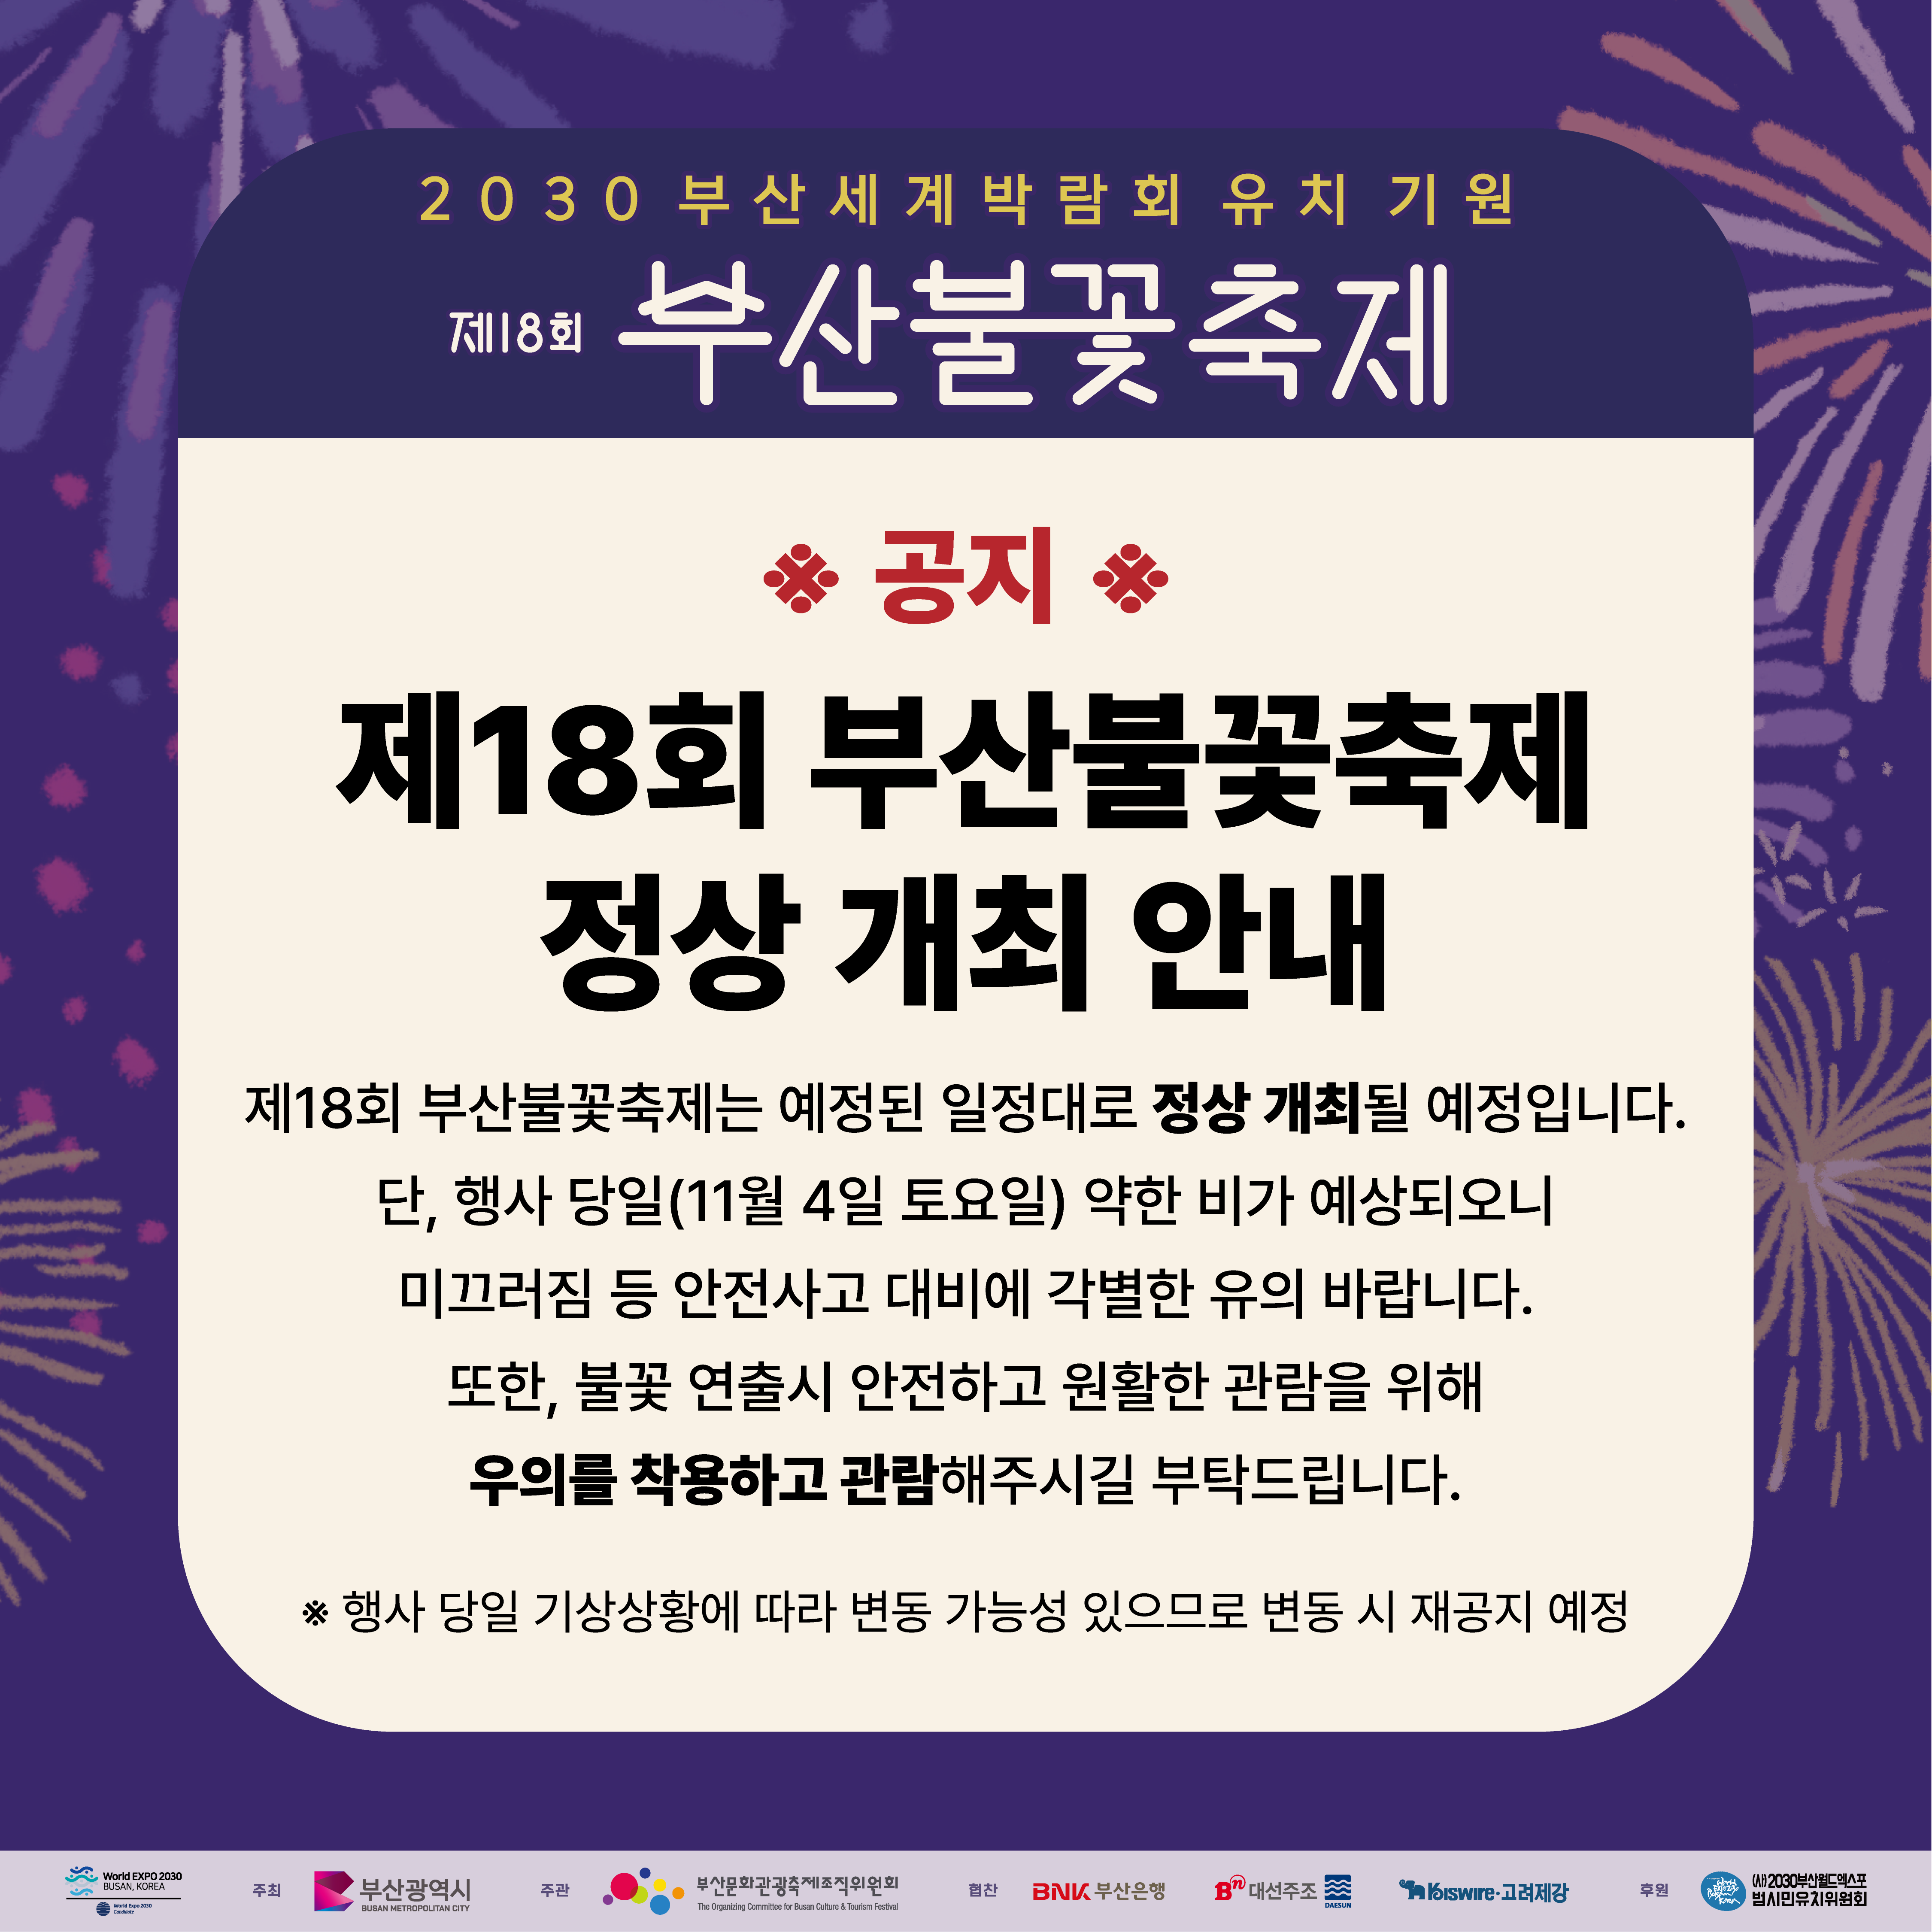 제18회 부산불꽃축제 정상 개최 안내